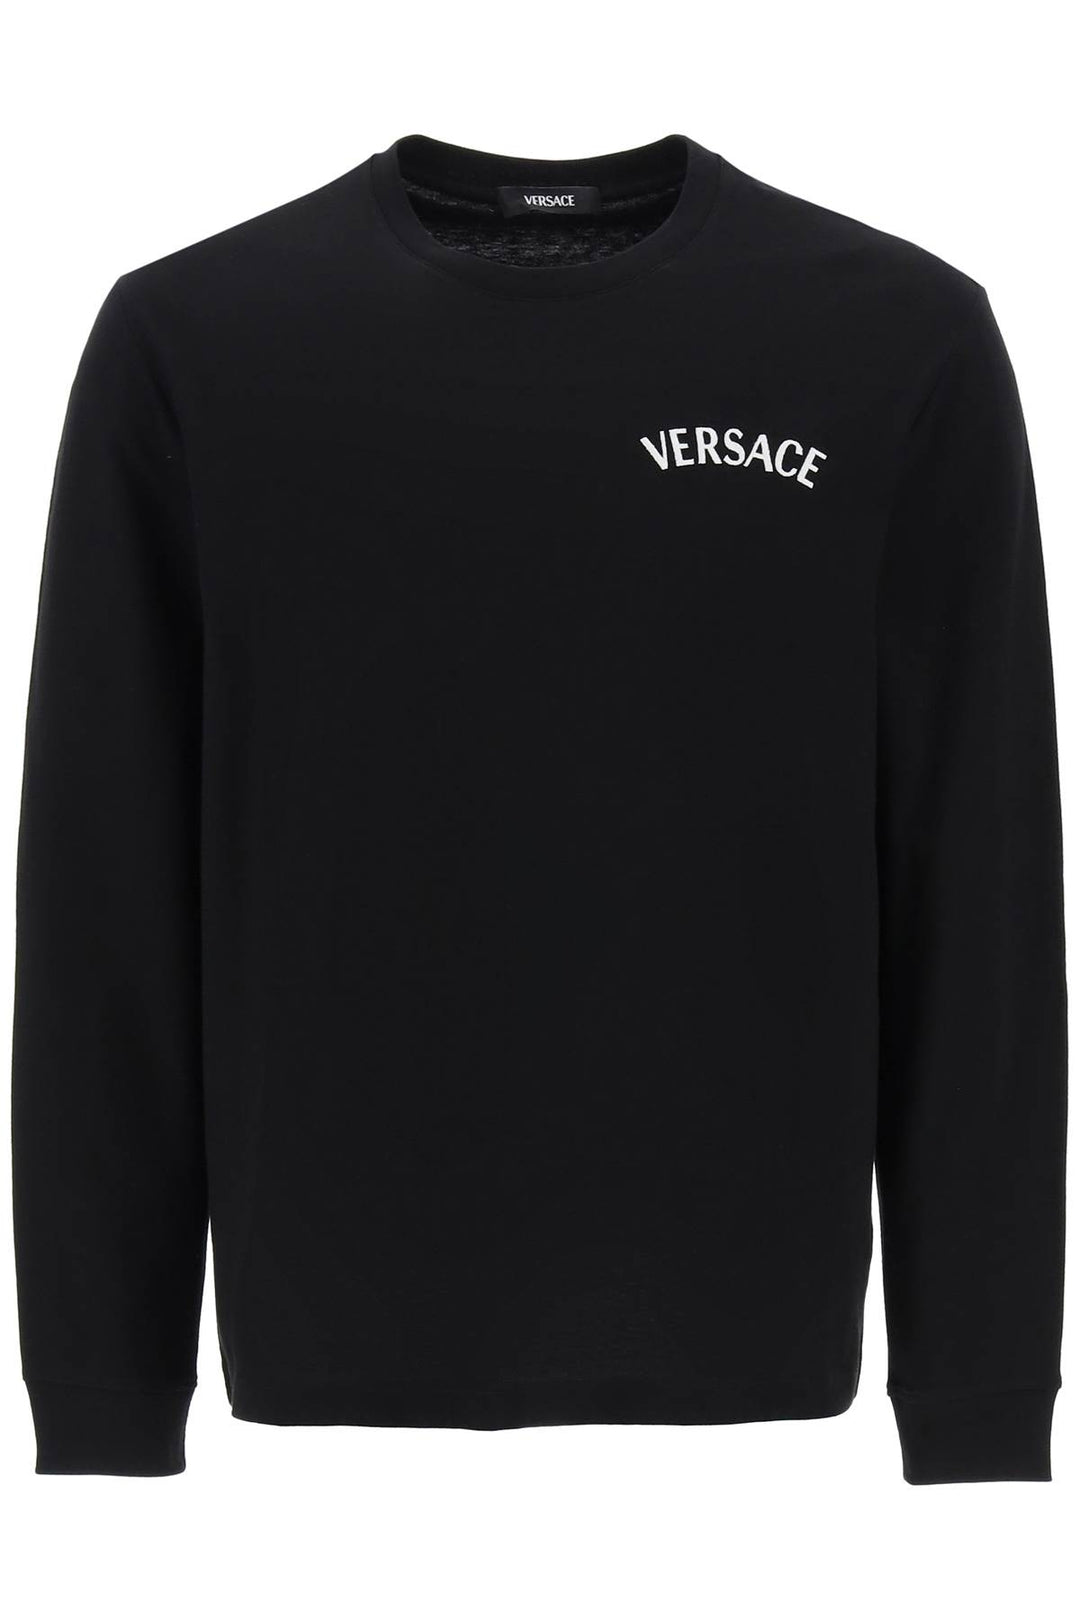 Versace Milano Stamp Long Sleeved T Shirt   Nero